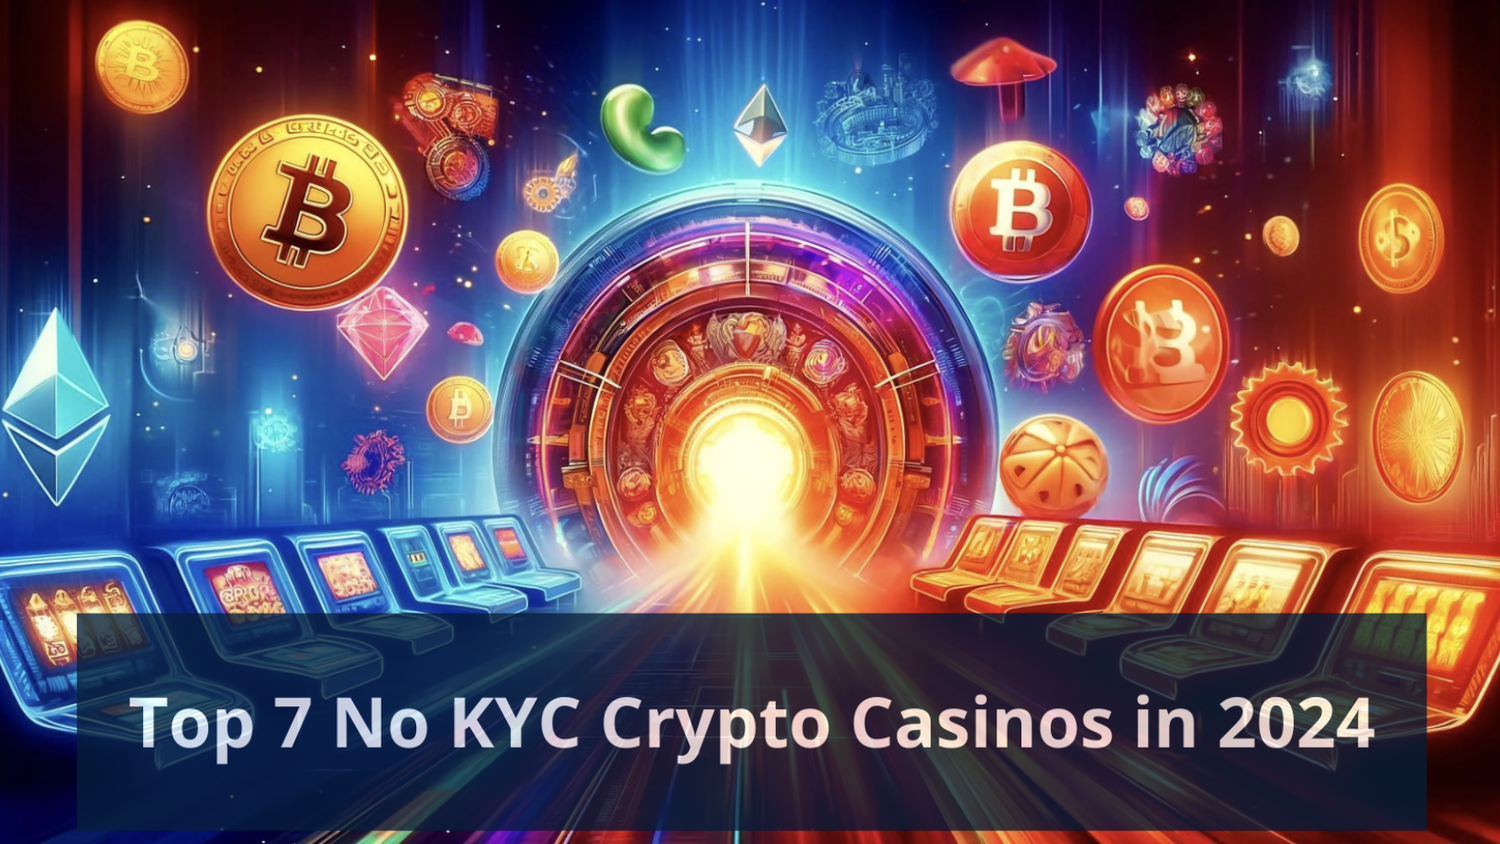 Top 7 No KYC Crypto Casinos in 2024